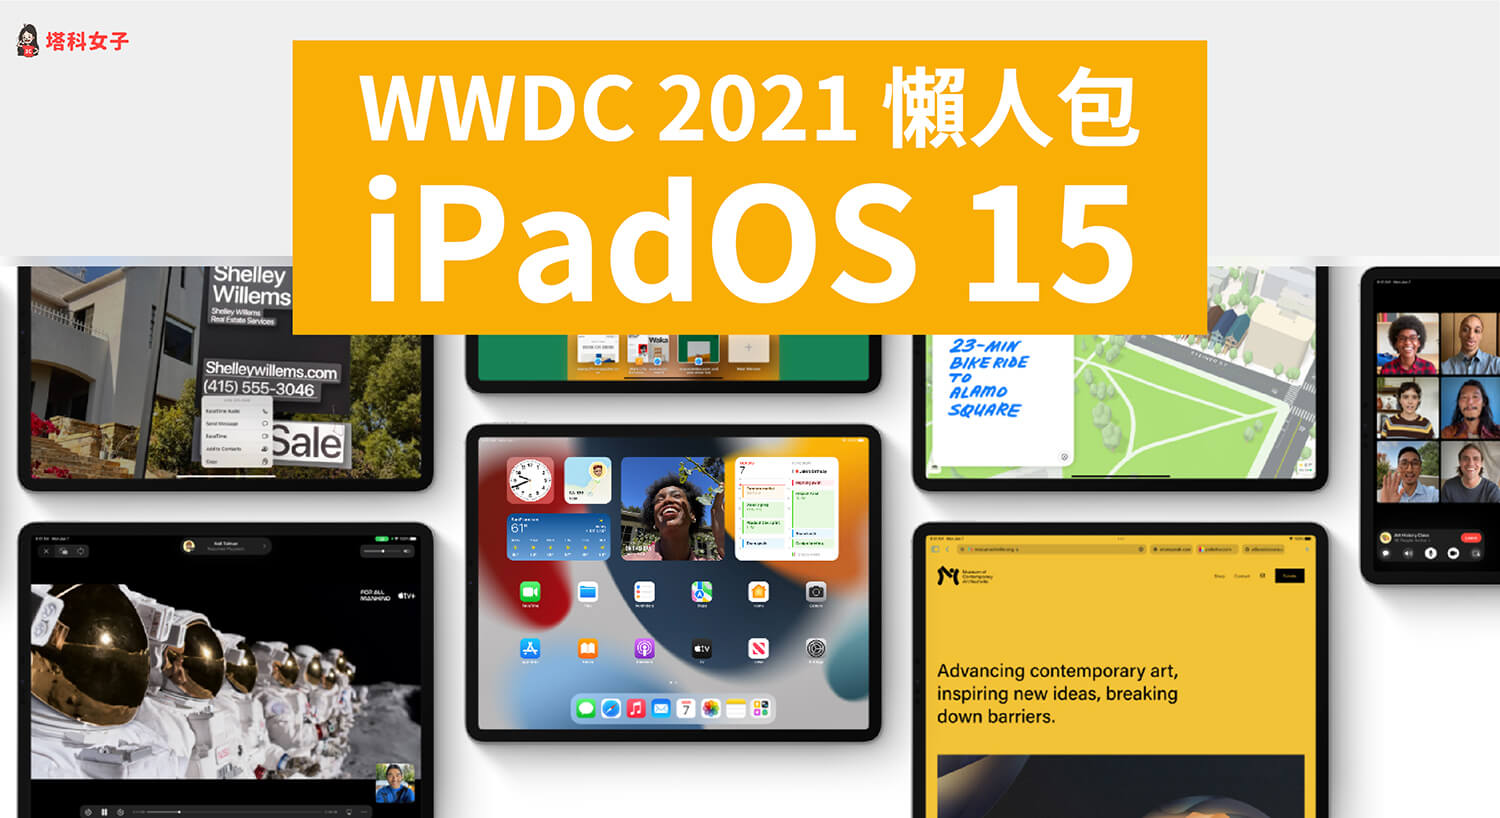 蘋果 WWDC 2021 / iPadOS 15 新增五大功能：桌面小工具、多工處理、App 資料庫、Universal Control、備忘錄 Quick Notes